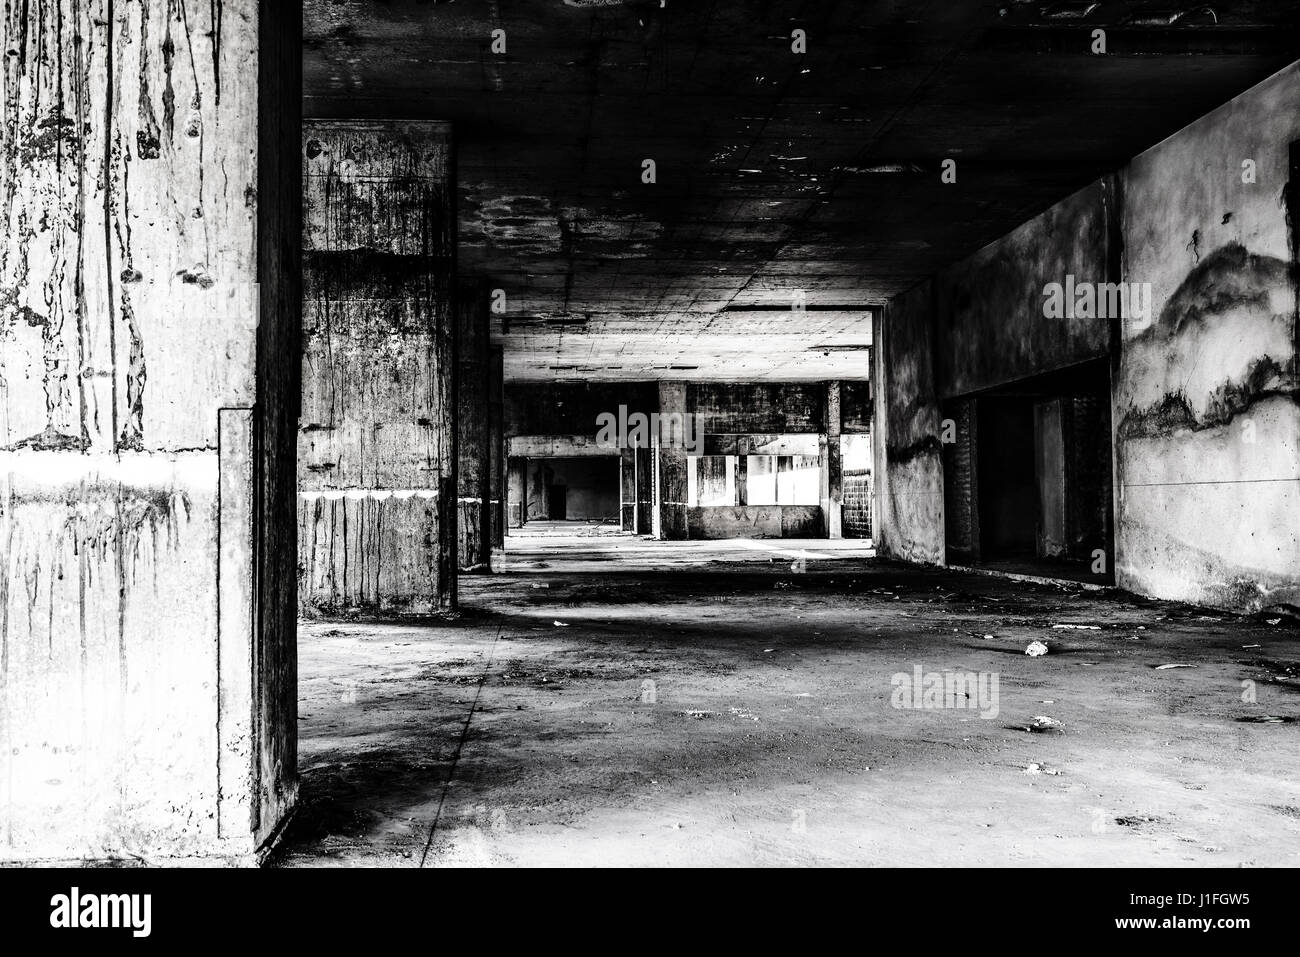 Edificio abandonado ghost lugar habitable, oscuridad y horror tenebroso concepto de fondo Foto de stock